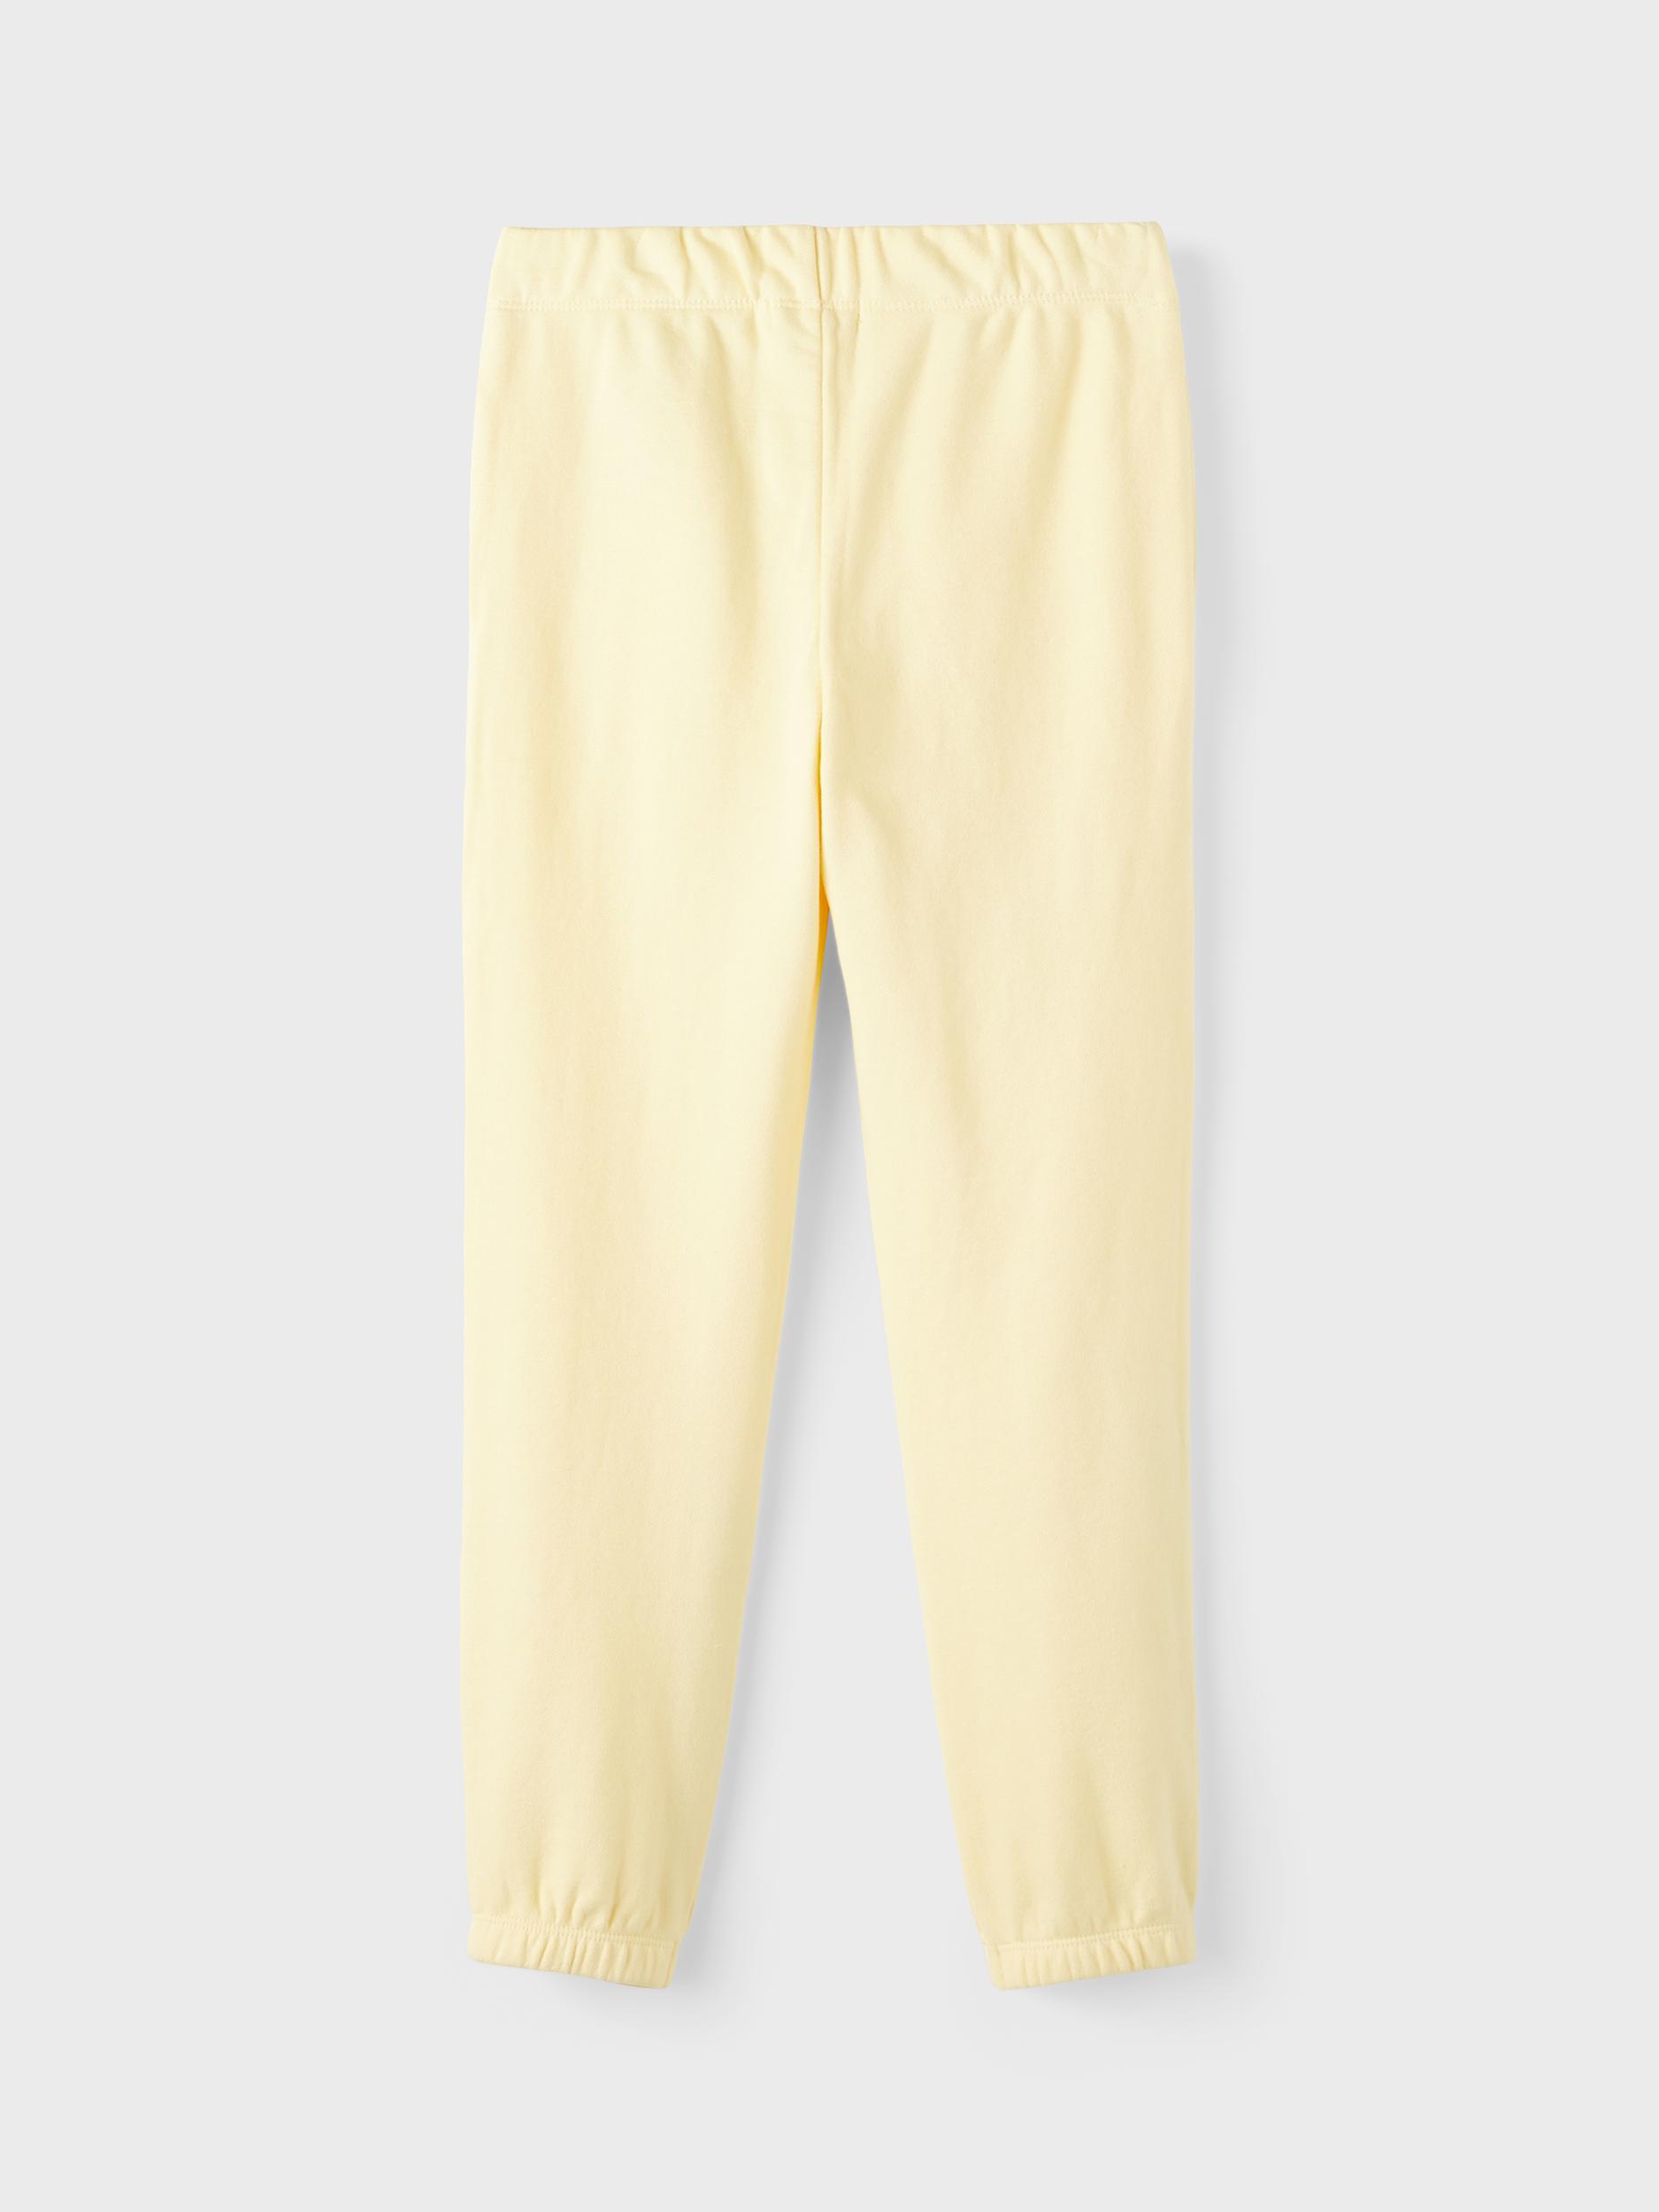  Sweatpants, Double Cream, 134 cm